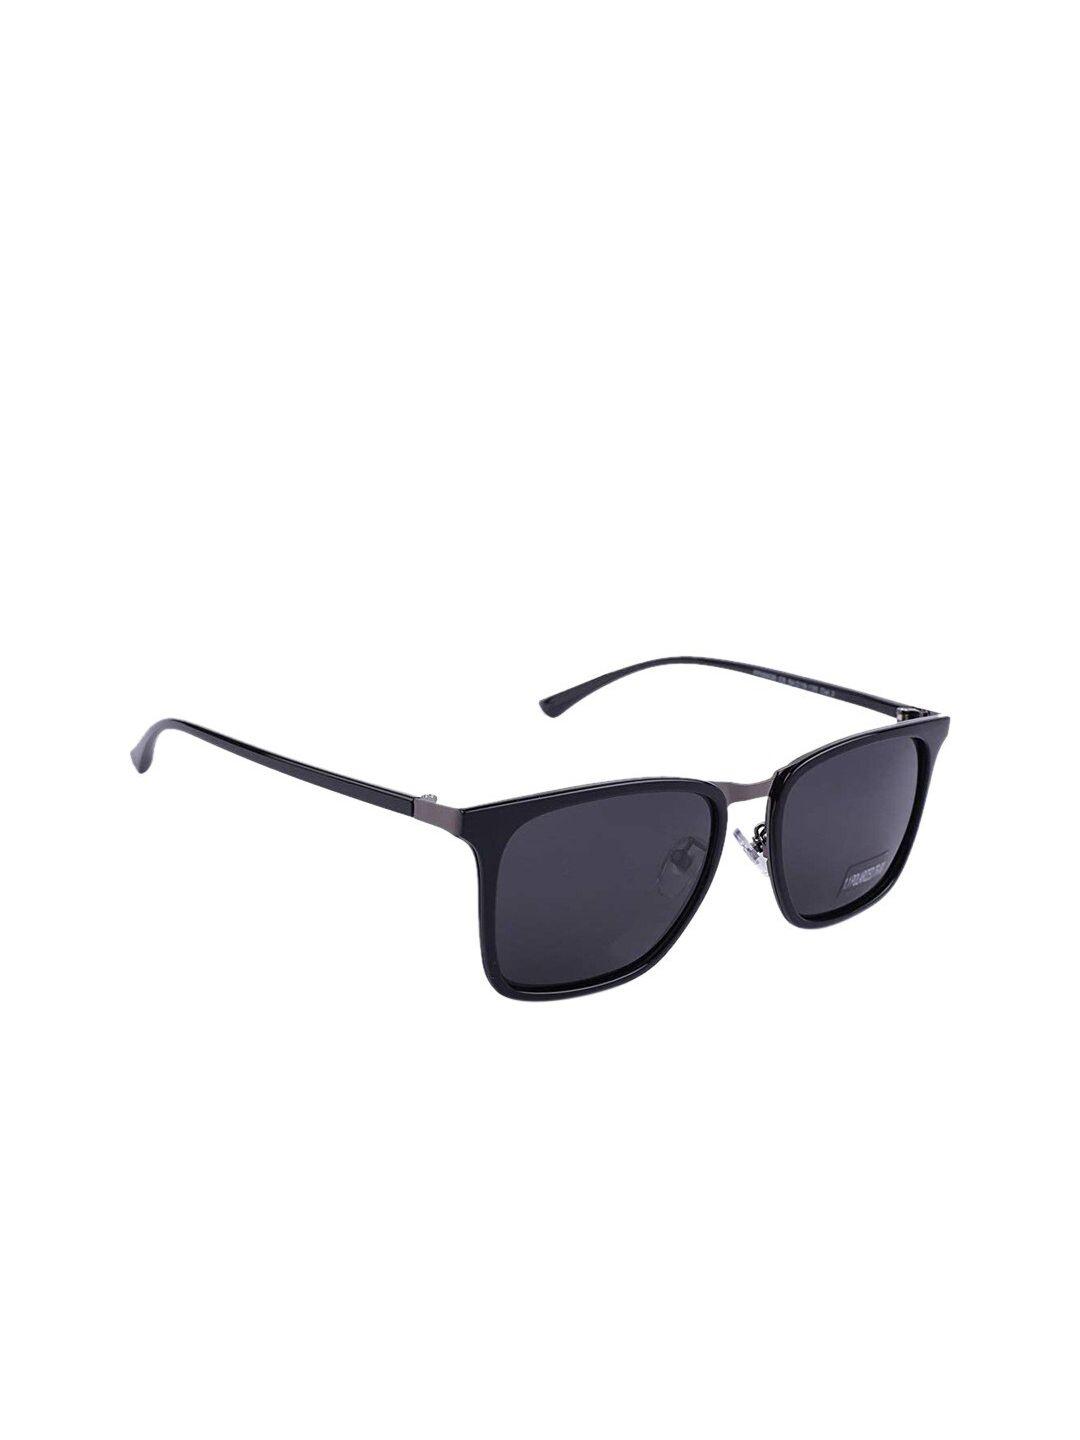 marc louis unisex grey lens & black square sunglasses with polarised lens